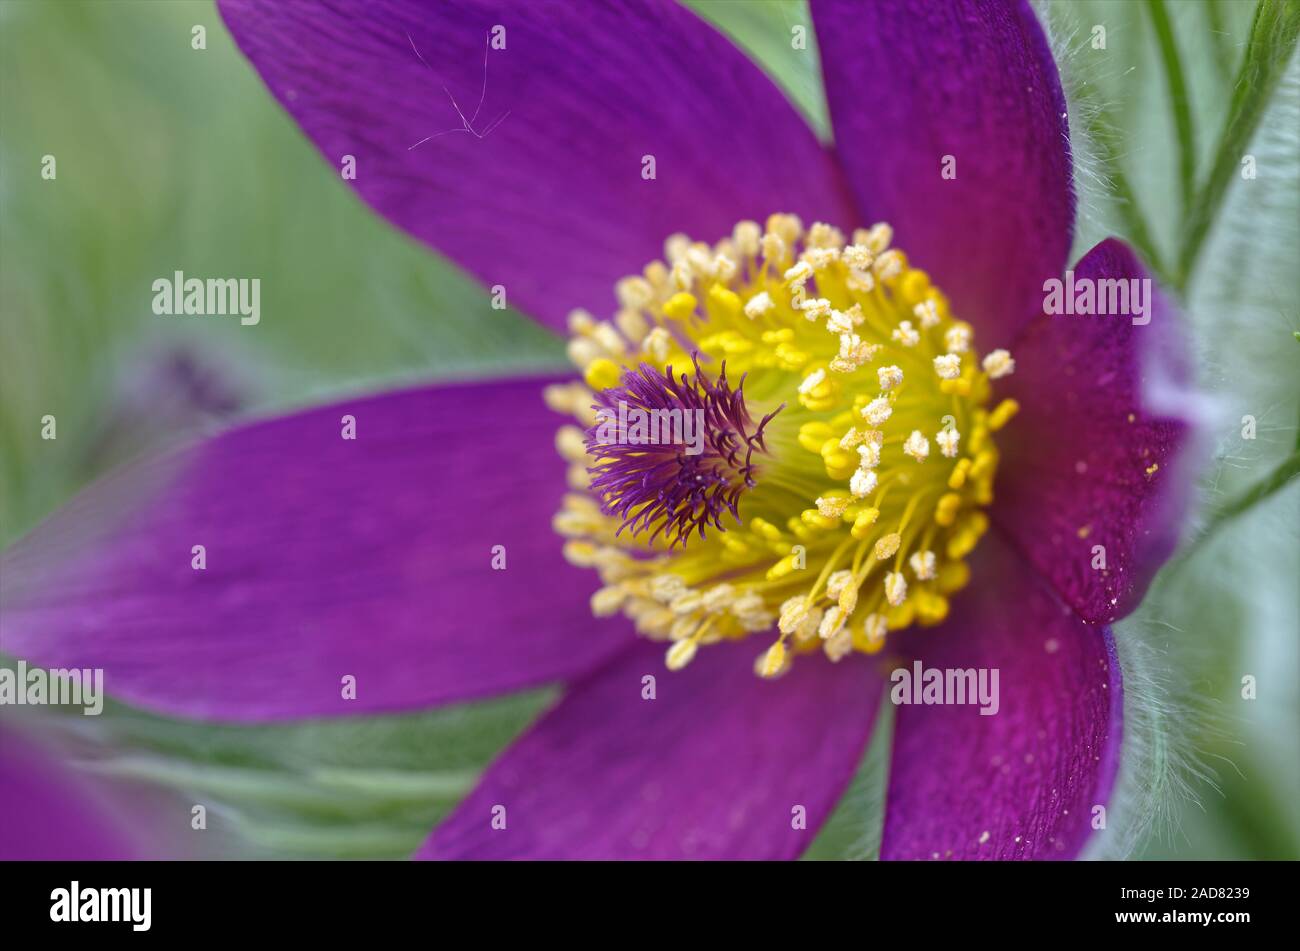 pasque flower Stock Photo